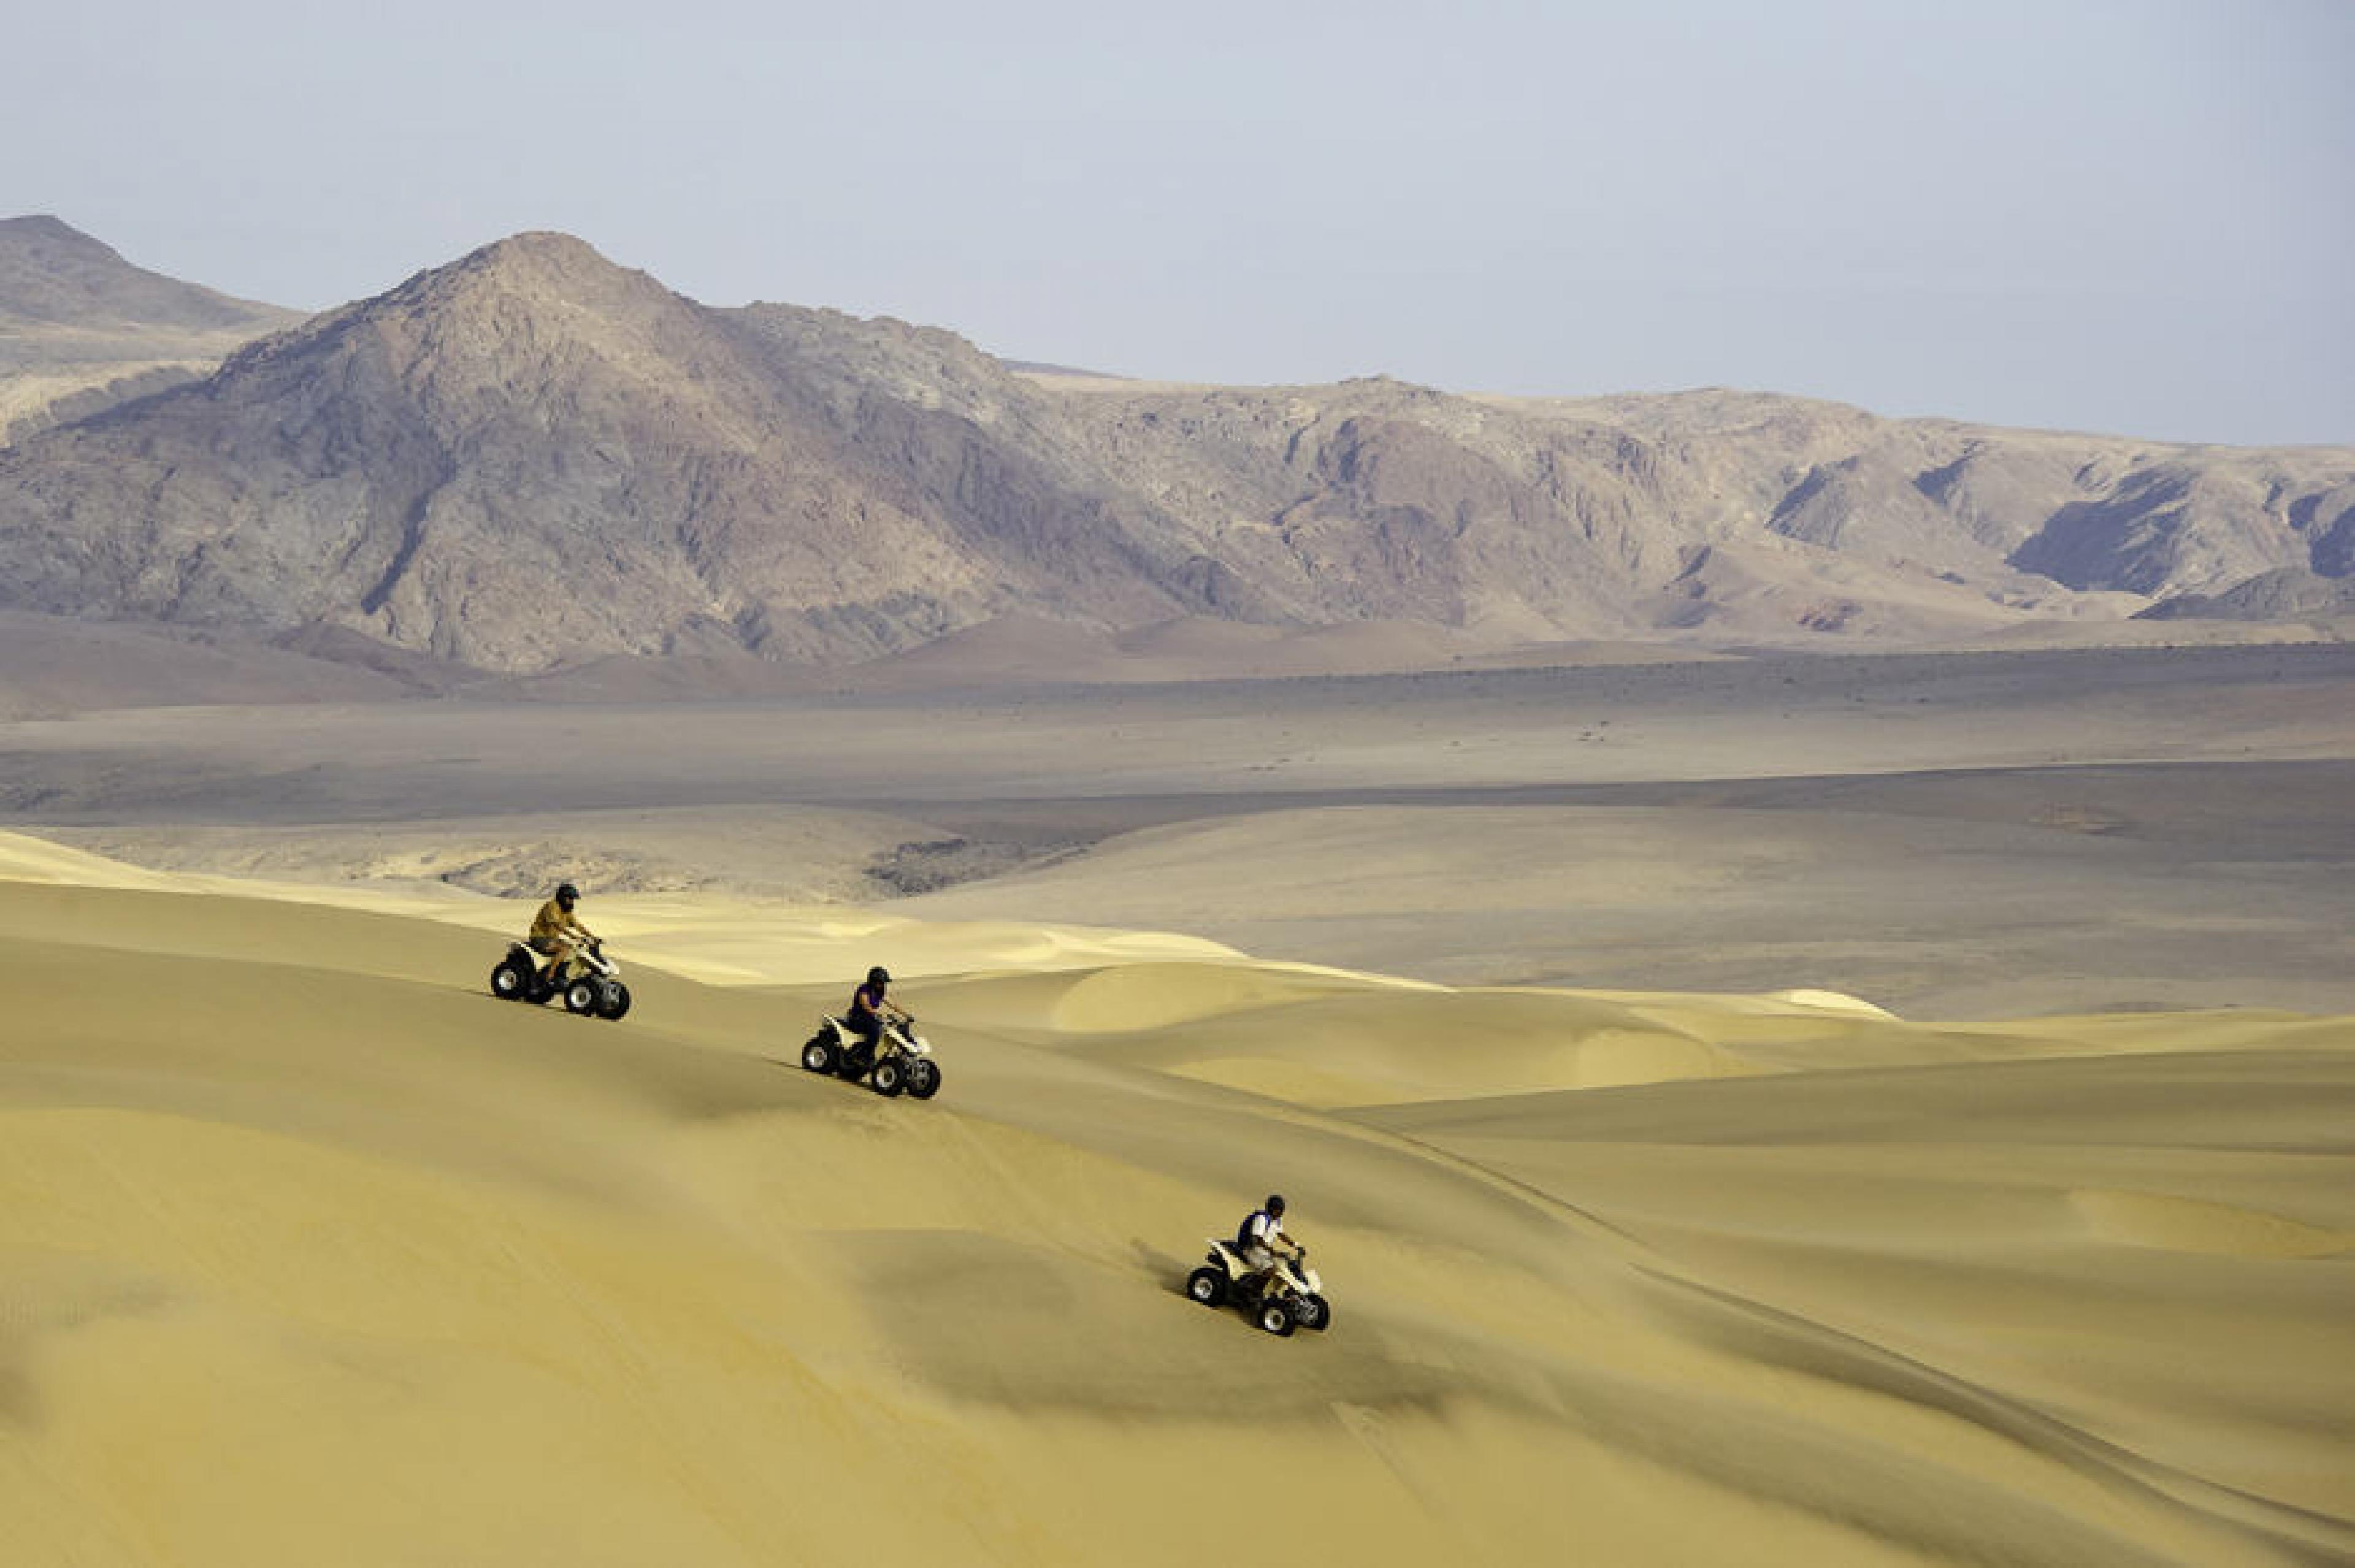 Quad BIking at Quad-Biking in Sand Dunes , Namibia, Namibia - Courtesy Dana Allen